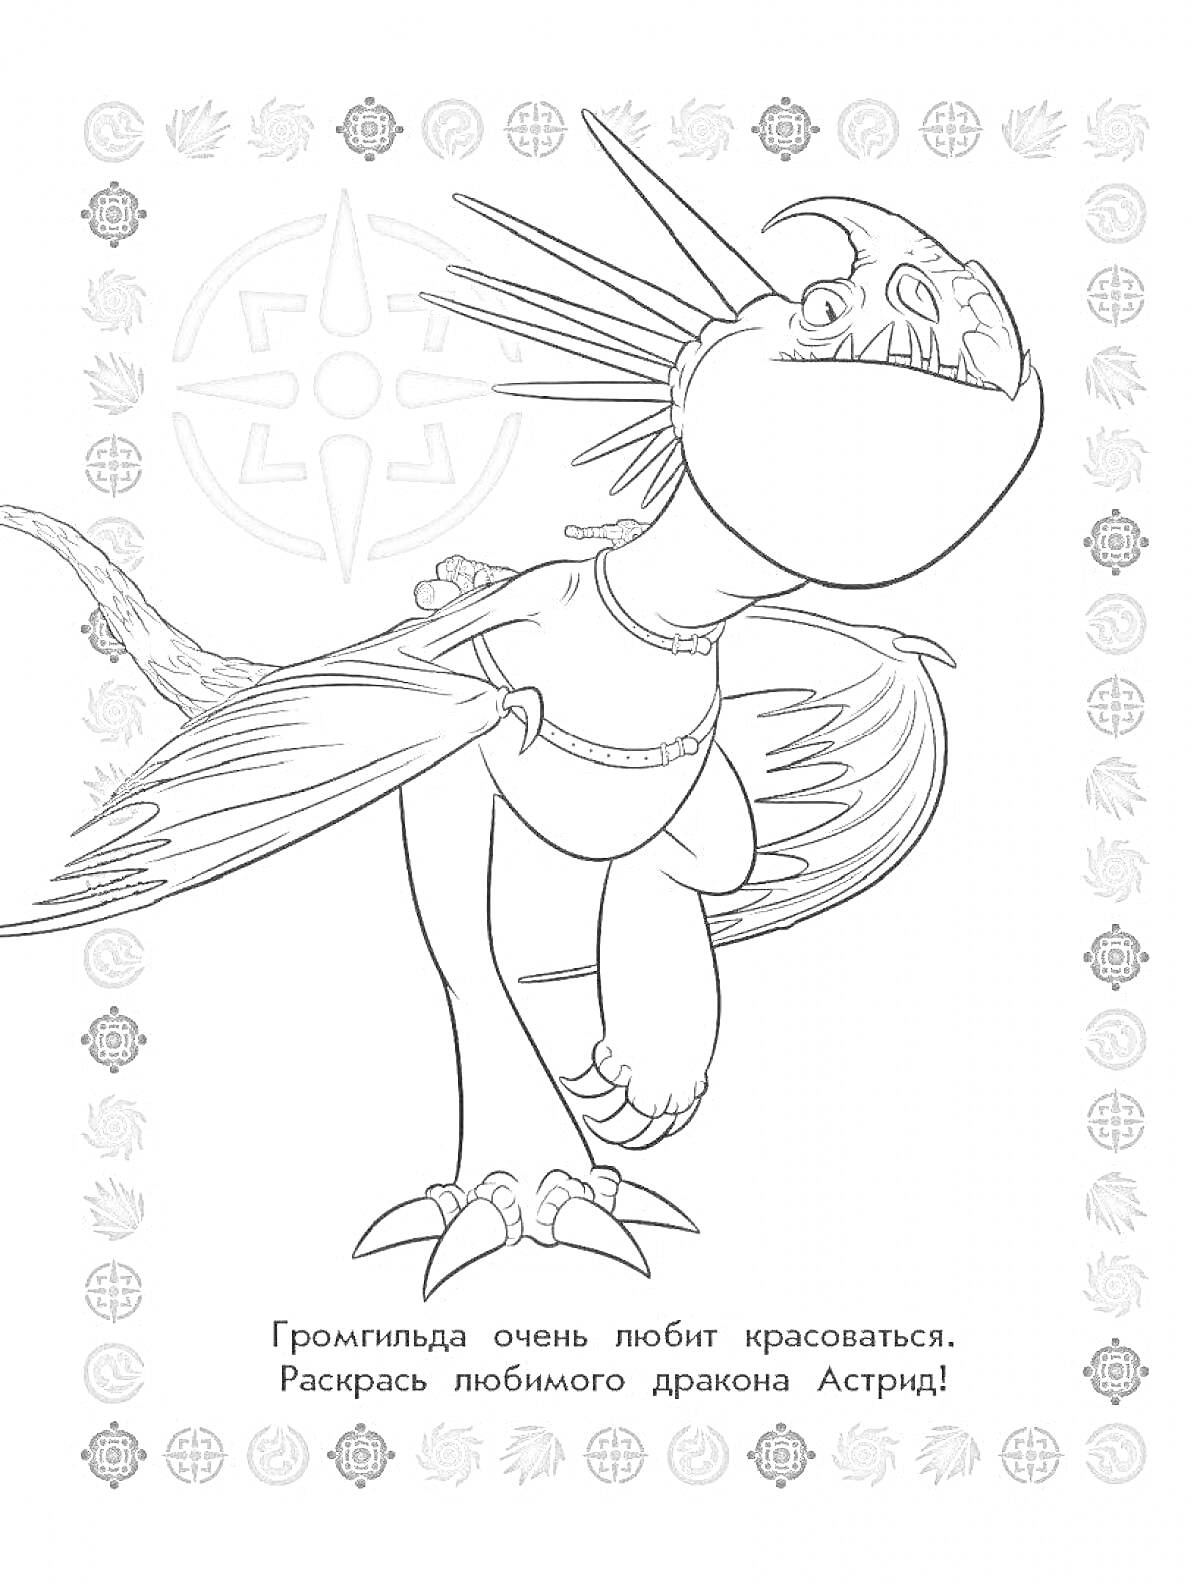 На раскраске изображено: Дракон, Громгильда, Большие крылья, Шипы, Символы